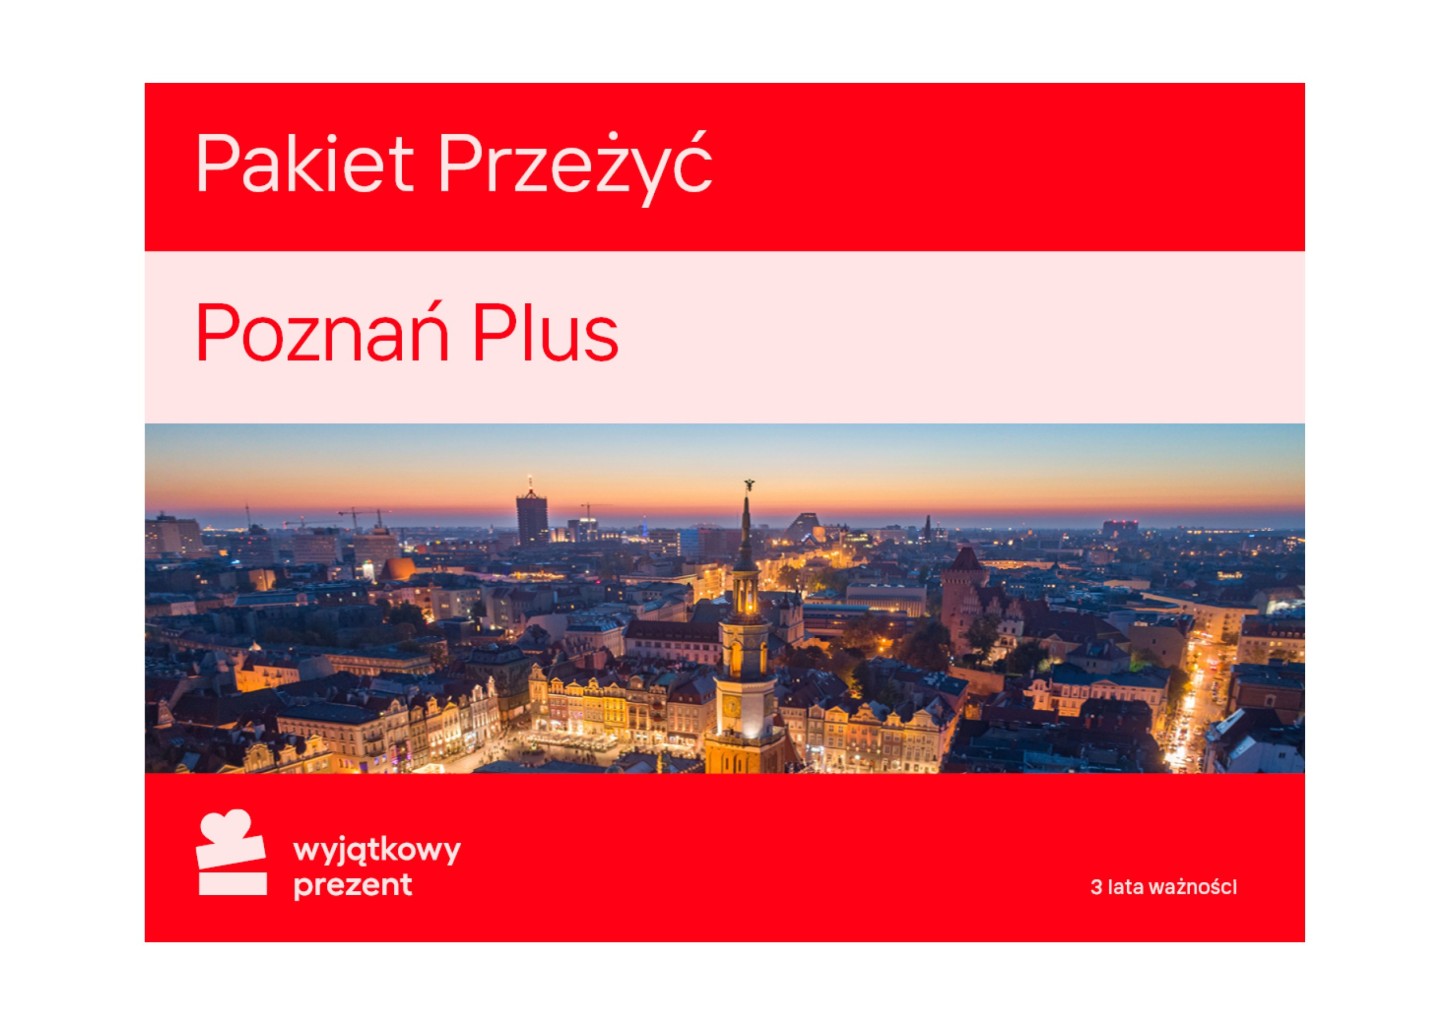 Pakiet Przeżyć "Poznań Plus"